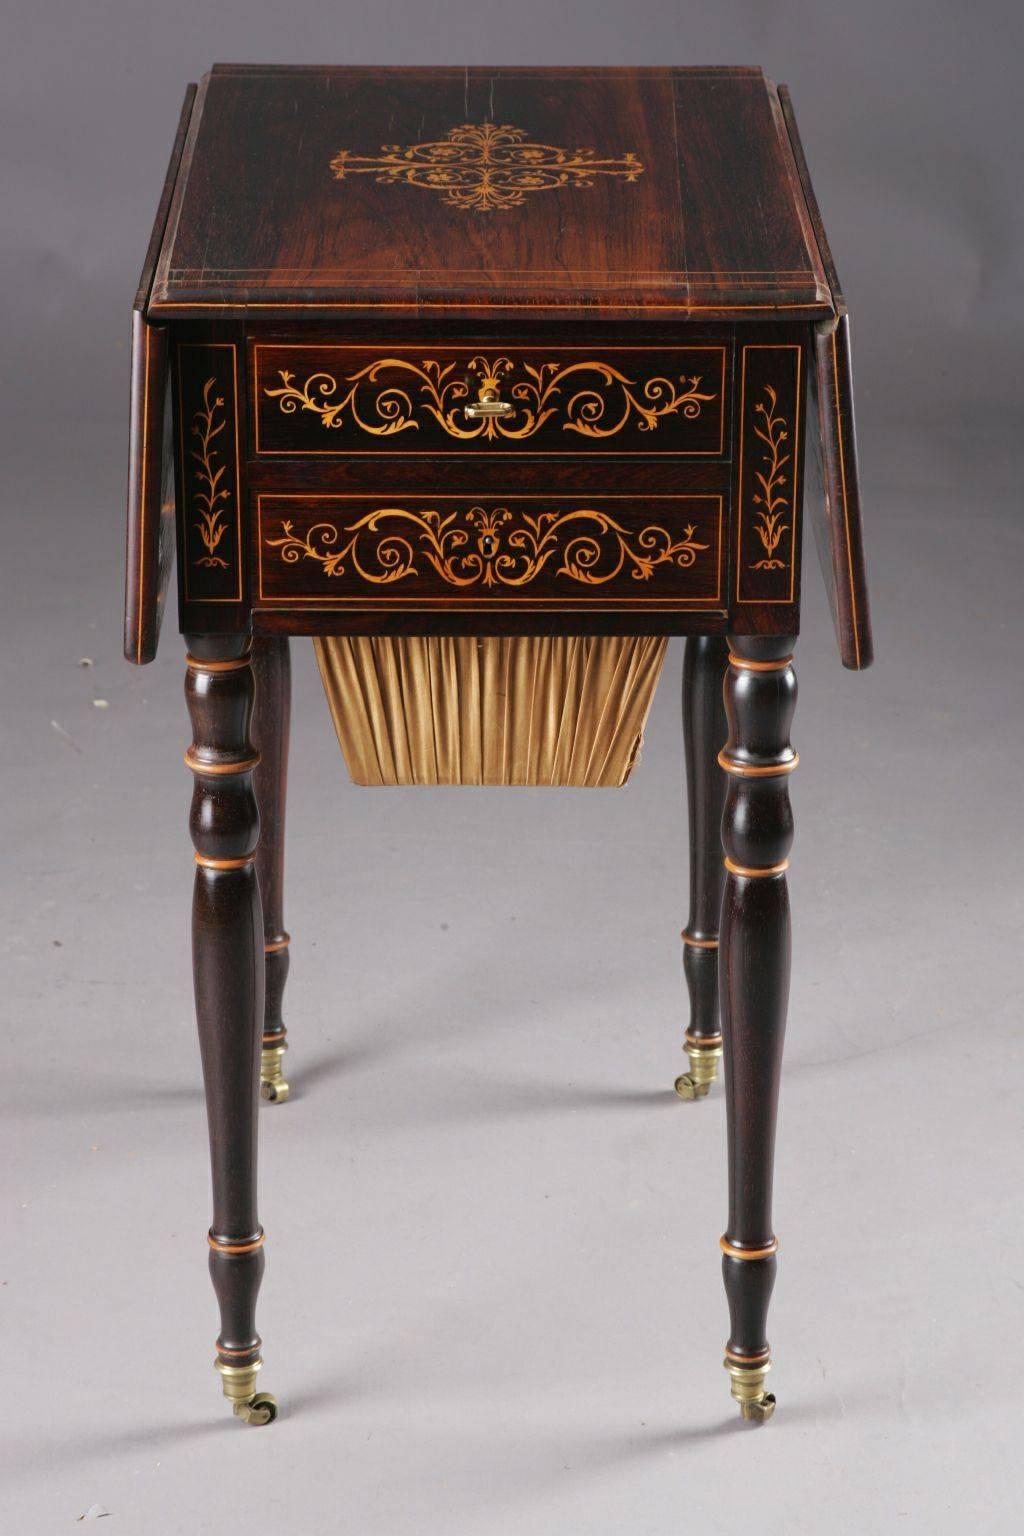 Exceptionnelle table de couture anglaise, vers 1825. Acogonie sur bois massif. Boîte à cadre à deux mains, comprenant des récipients en laine sur des pieds en forme de balustrade dans des chapeaux en bronze se terminant par des rouleaux. Des